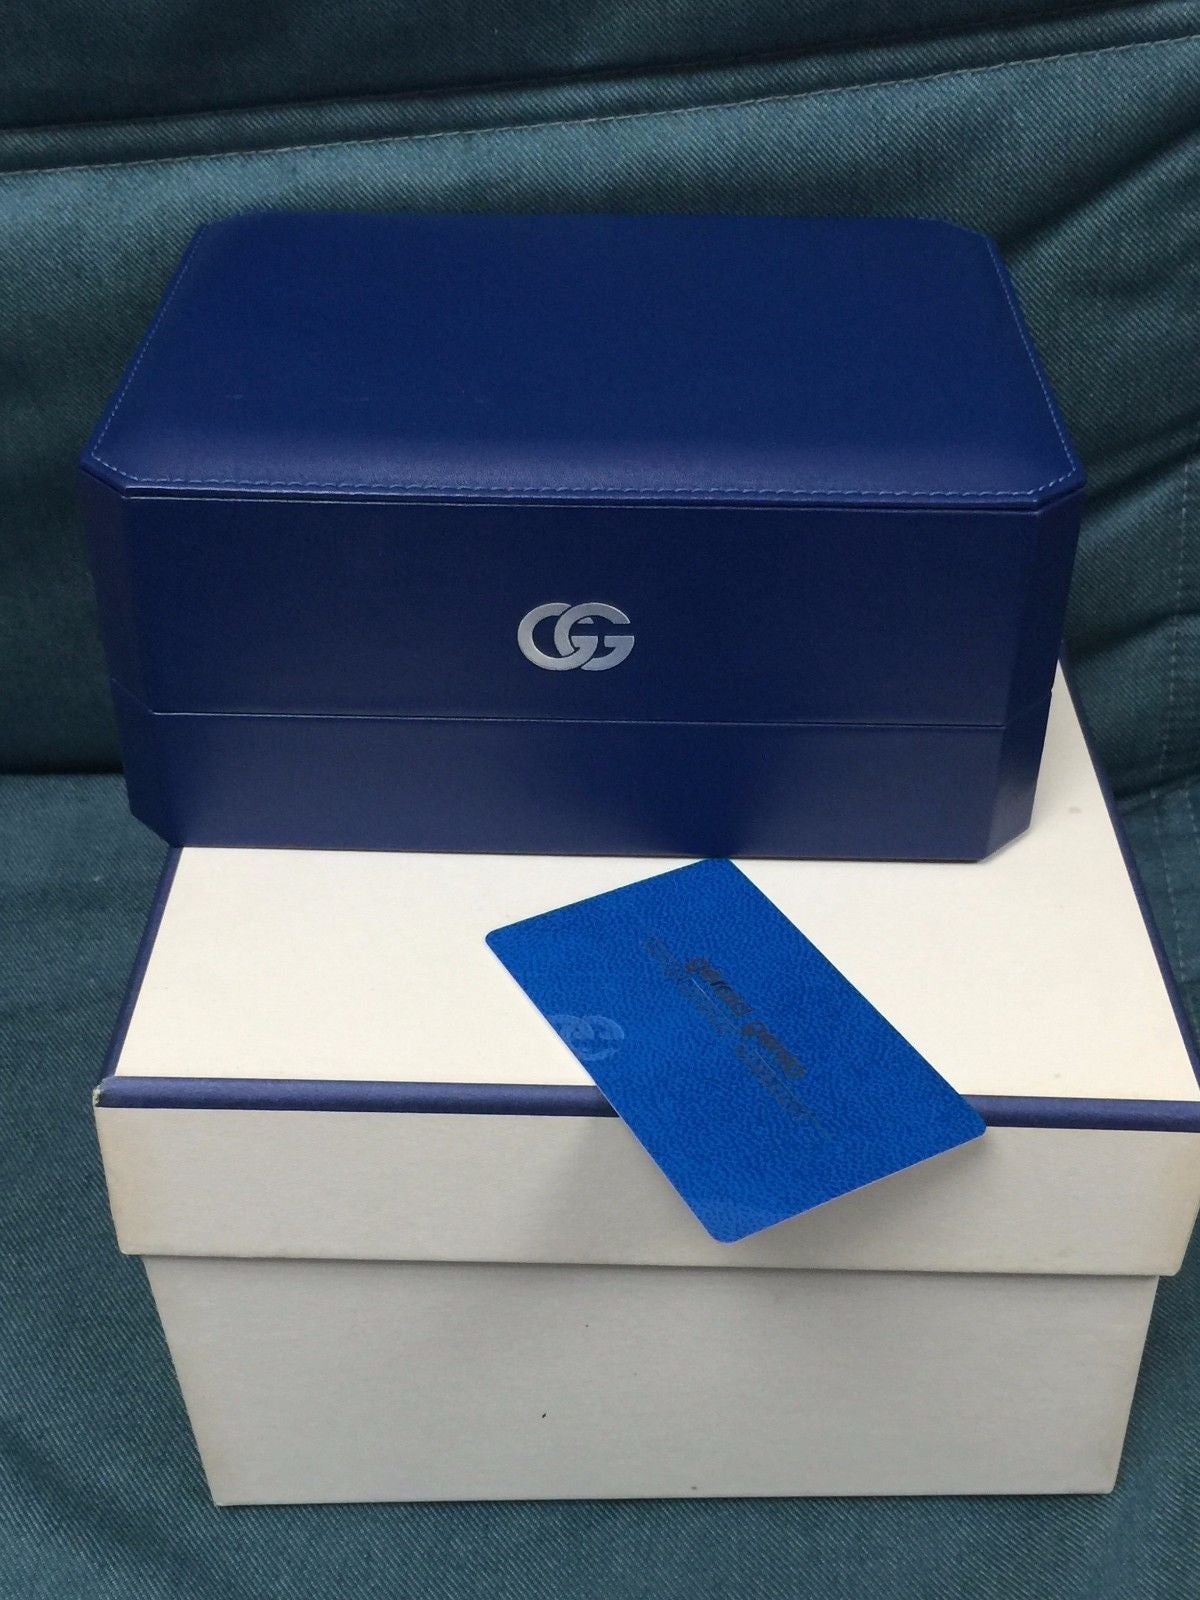 Vintage Gerald Genta Box And Paper | WatchUSeek Watch Forums